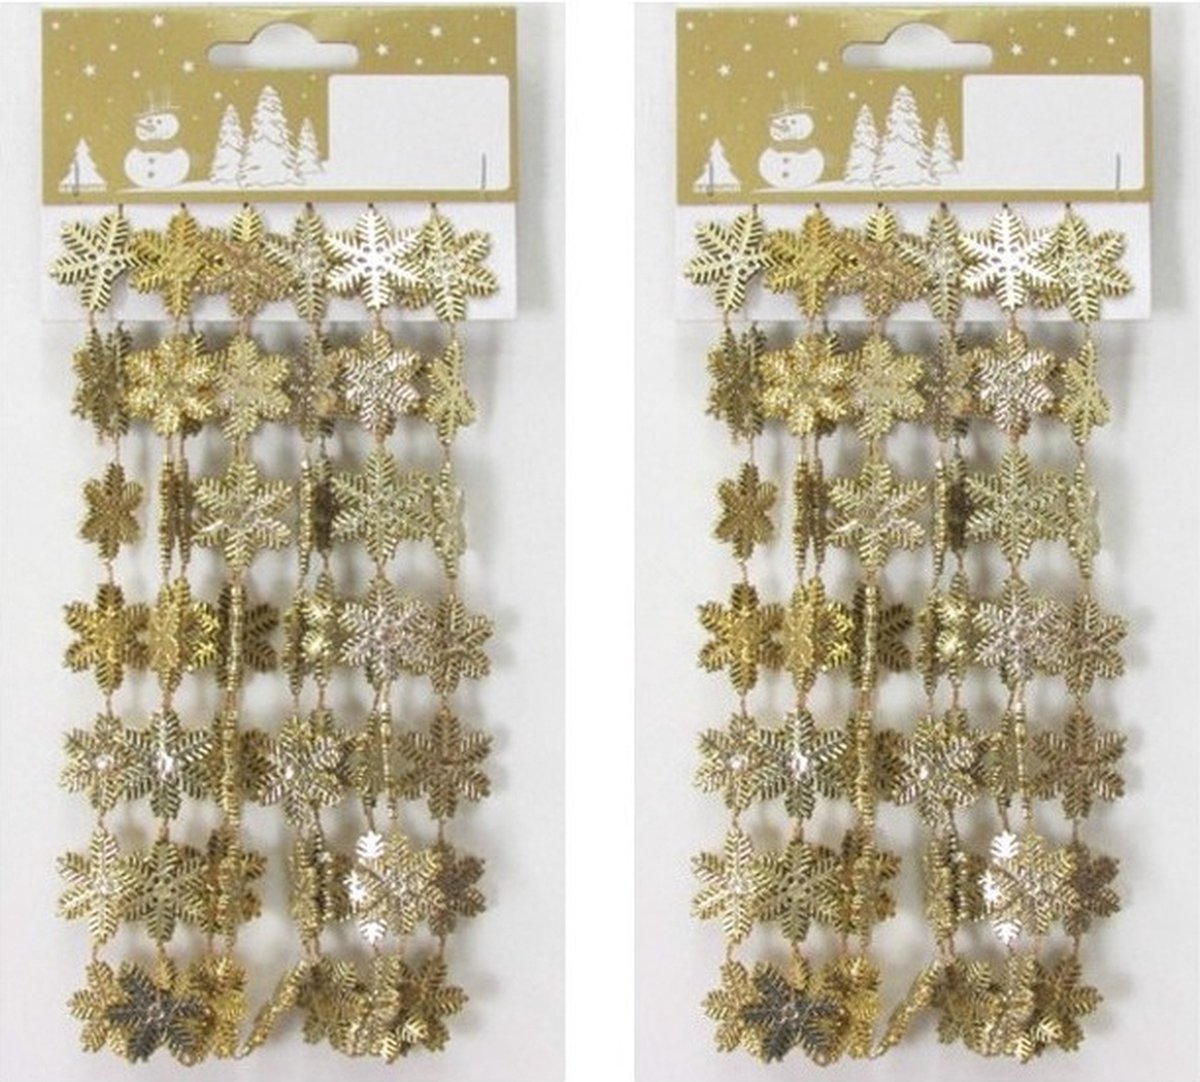 3x stuks gouden sneeuwvlokken guirlandes/slinger 180 cm kerstversiering - Kerstboomslingers kerstboomversieringen